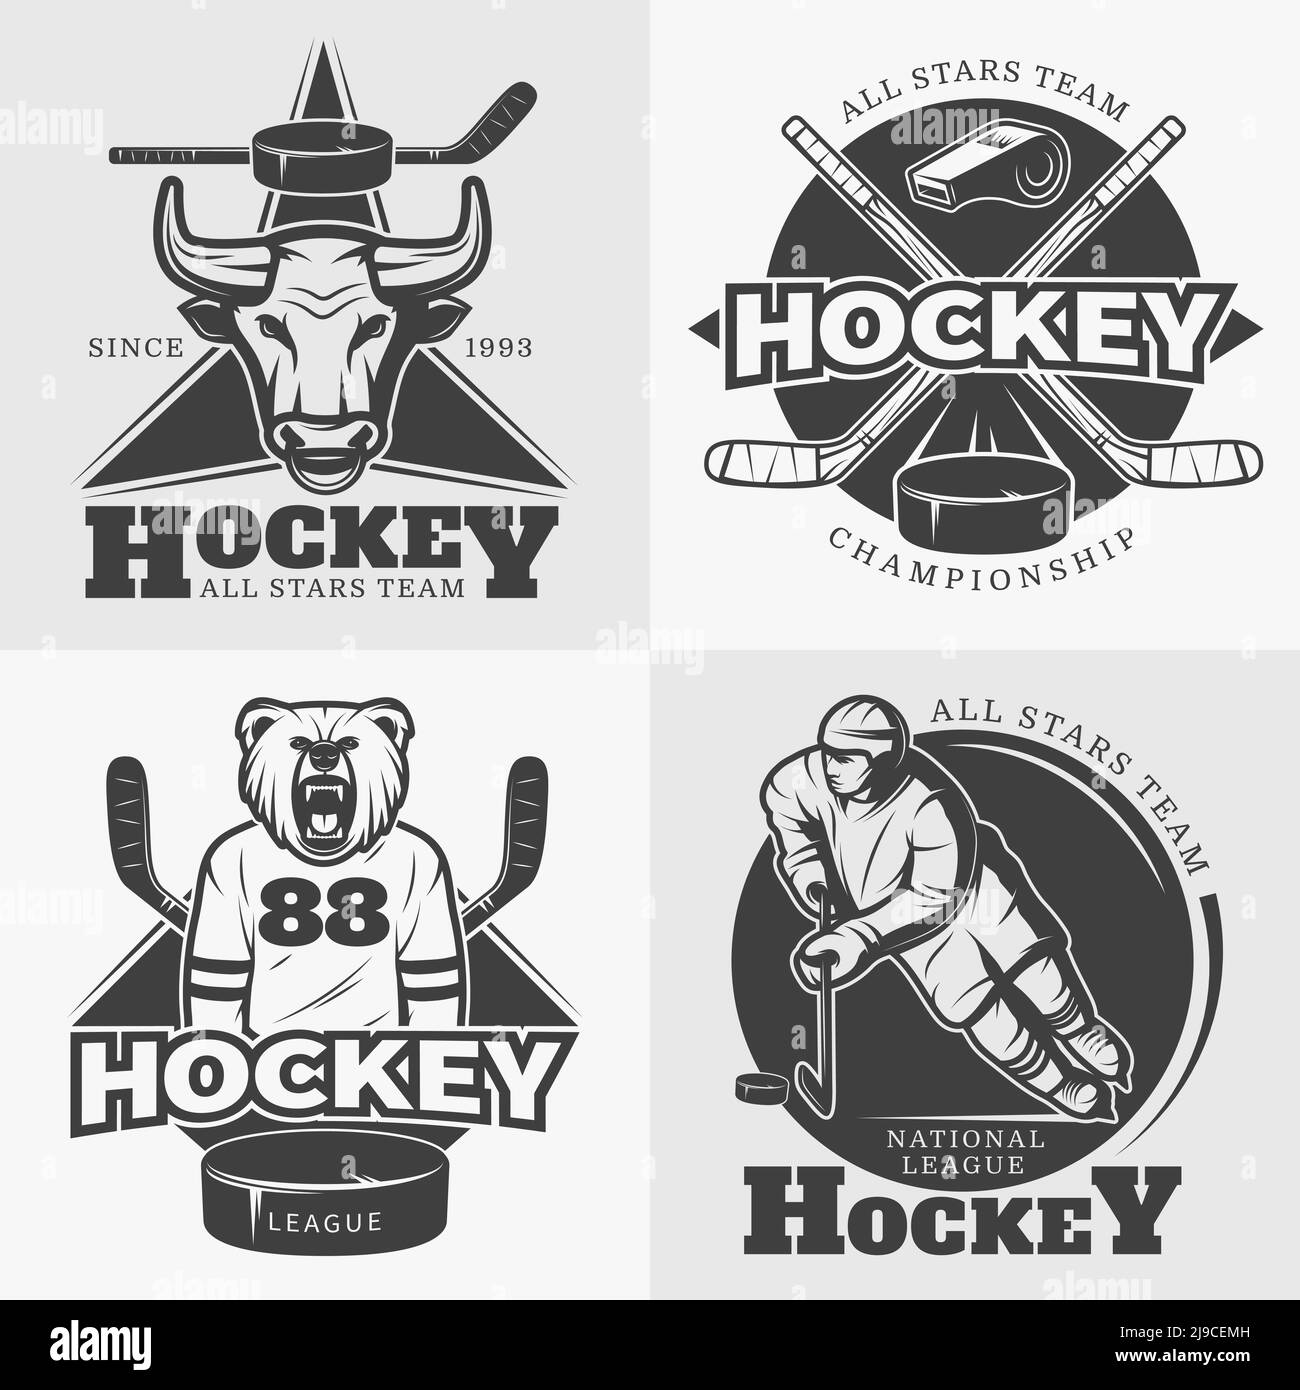 Eishockey Liga monochrome Komposition von vier dekorativen quadratischen Emblem Kompositionen Etiketten für alle Sterne Sport Team Vektor Illustration Stock Vektor